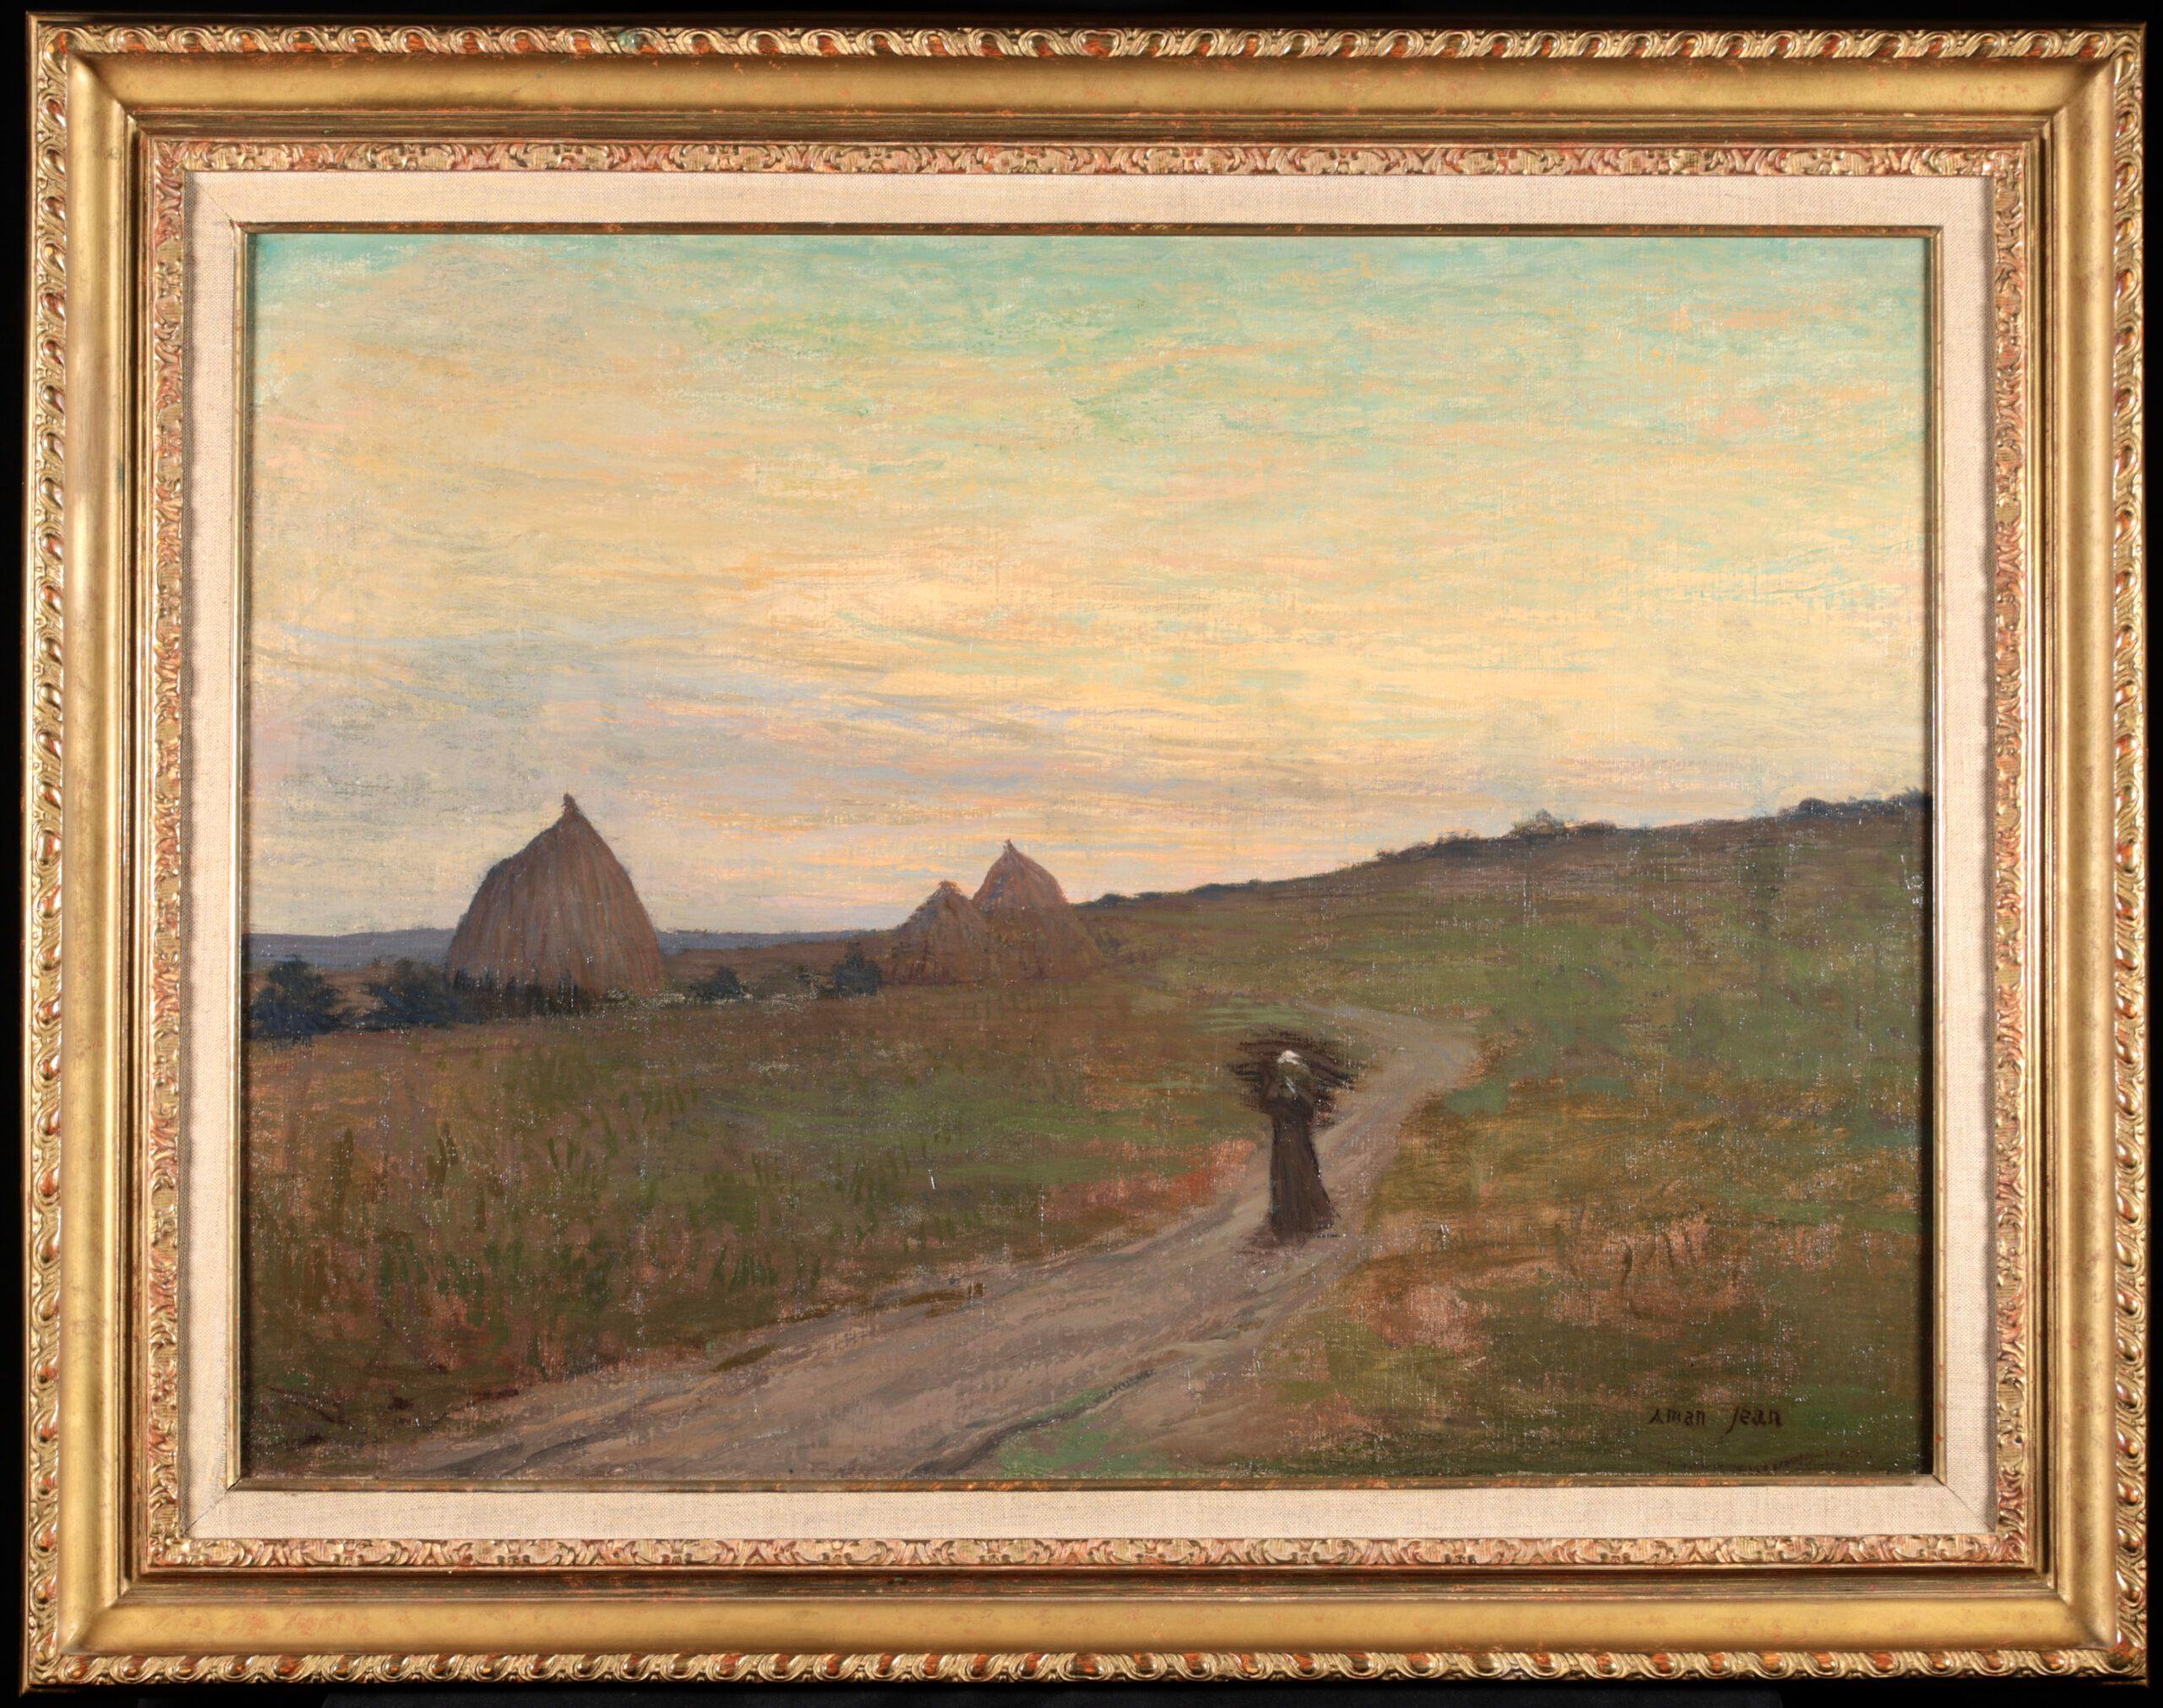 Figure symboliste dans un paysage signée, huile sur toile originale circa 1890 par le peintre français Edmond Francois Aman-Jean. L'œuvre représente une femme seule portant une charge sur un chemin rural. Au loin, le soleil se couche dans les plus